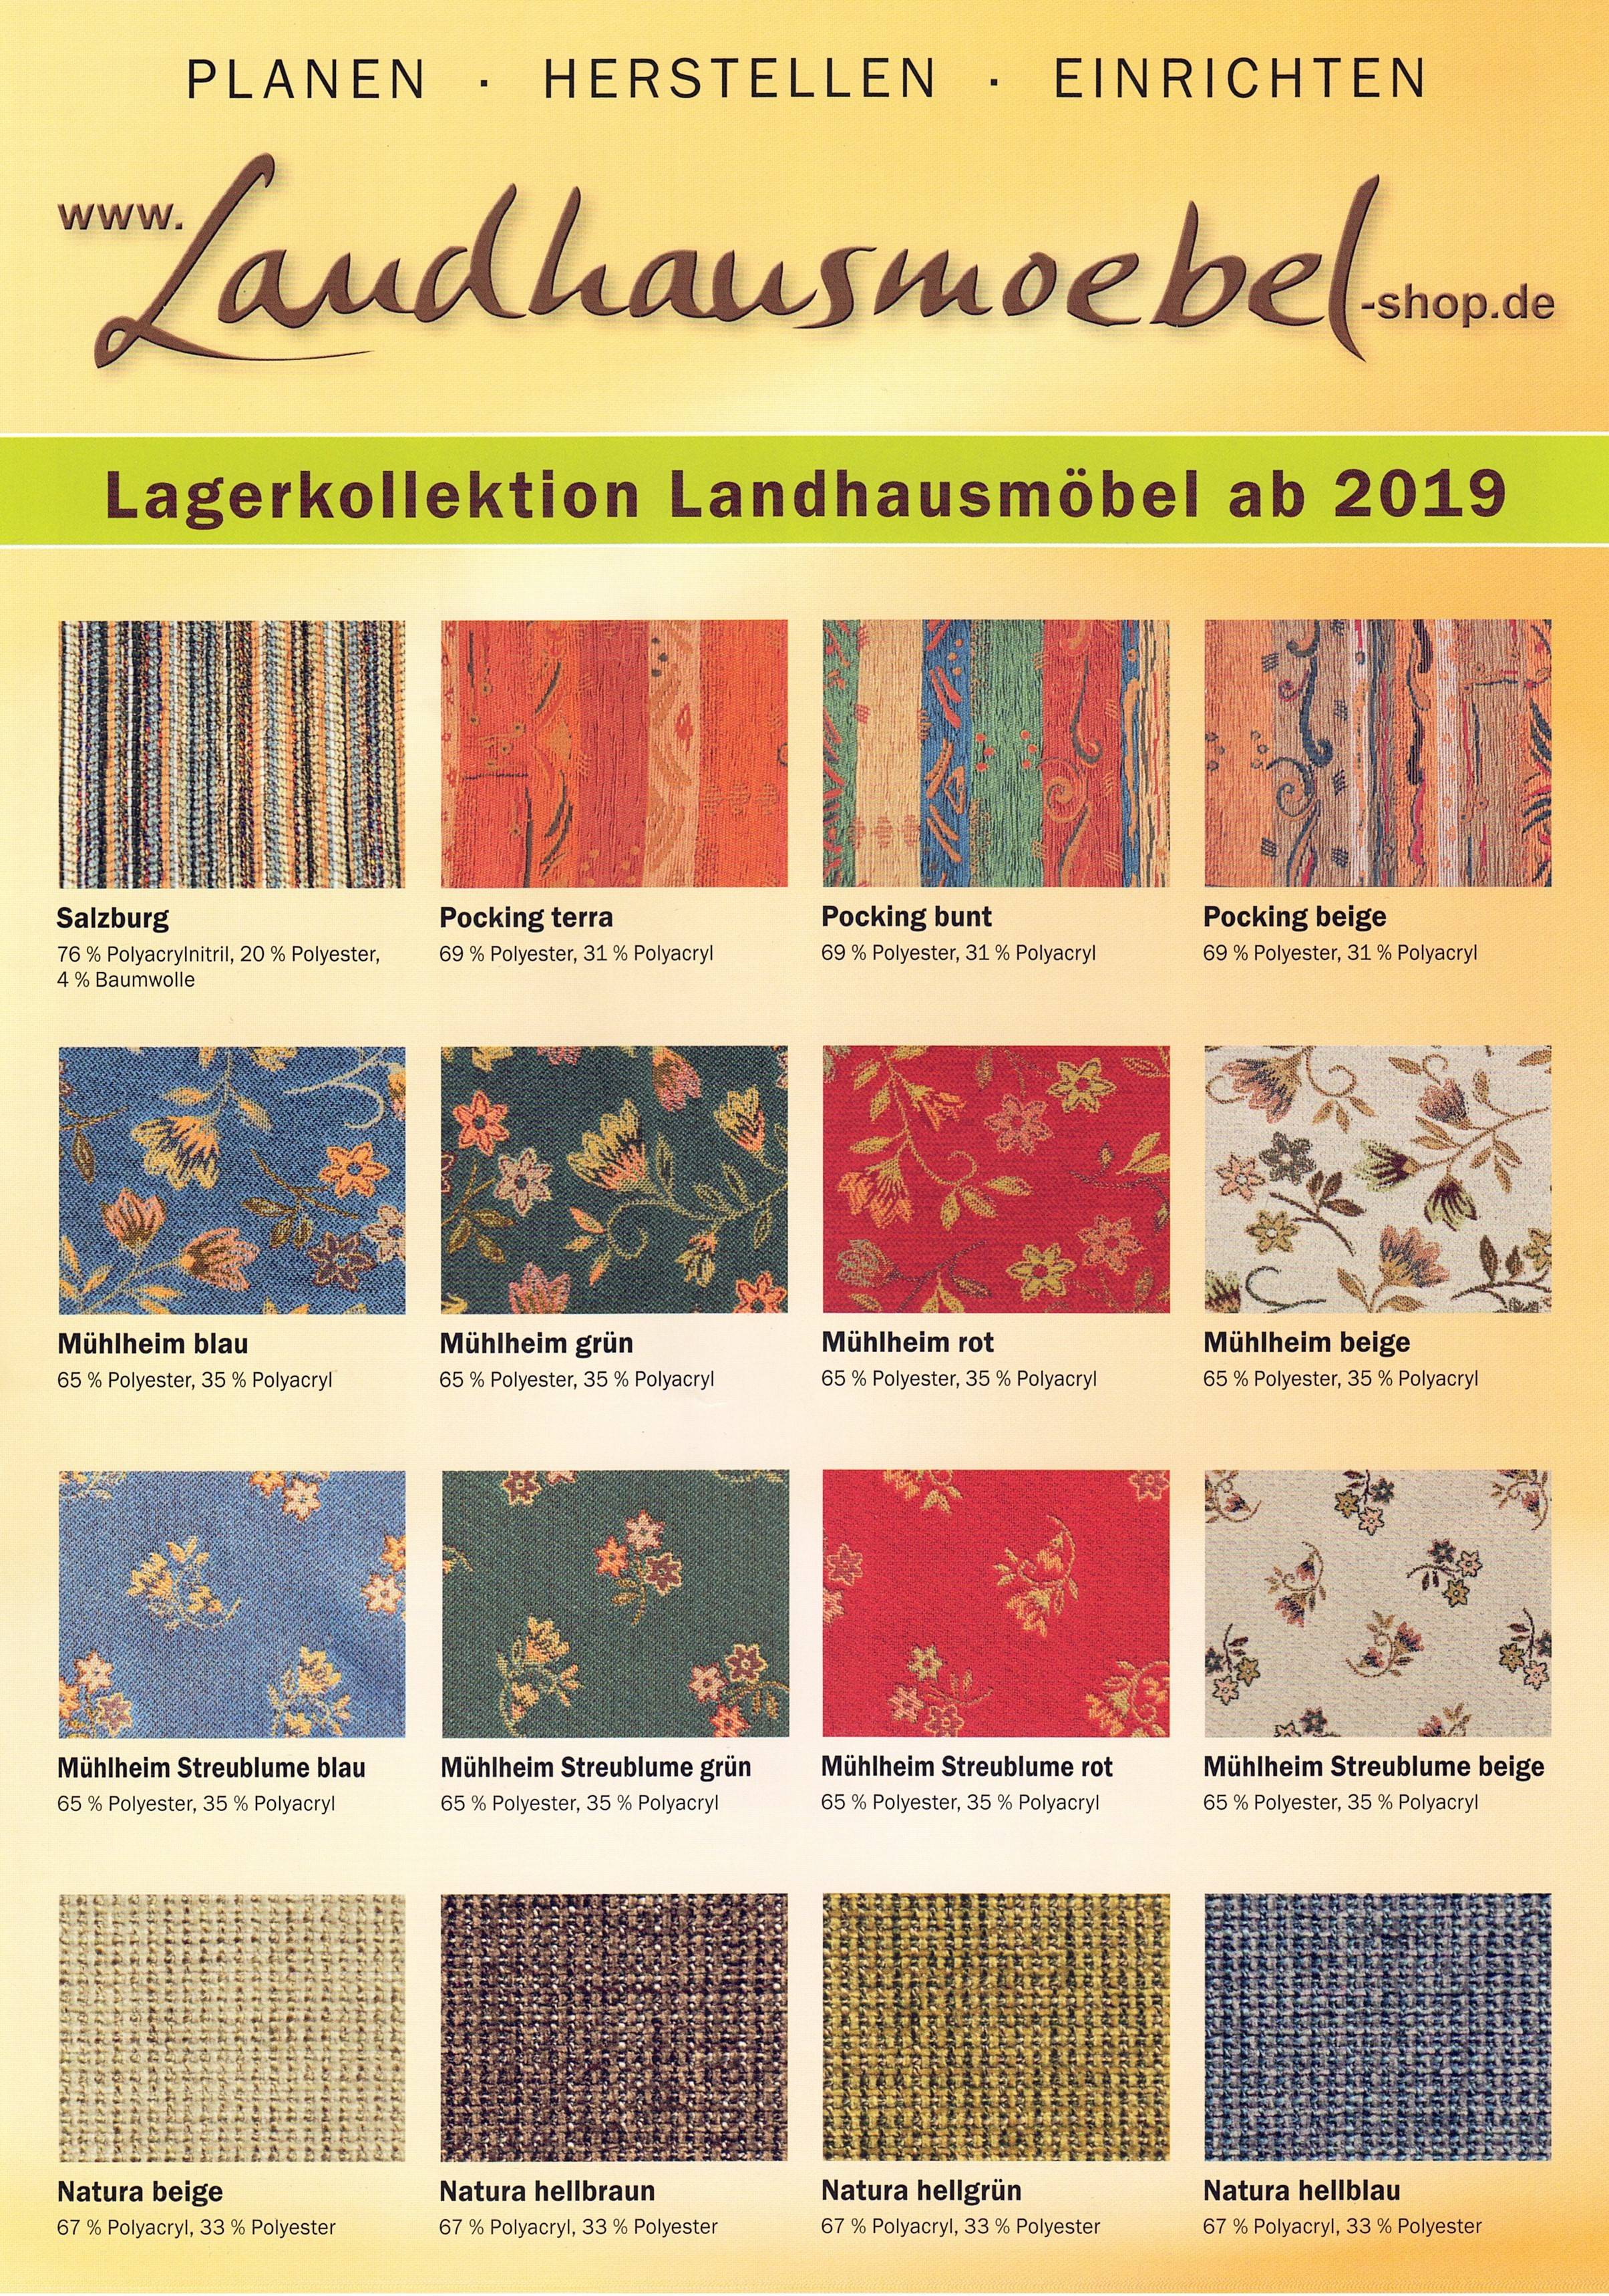 Landhausmöbel Lagerkollektion, Musterbuch mit 38 Lagerstoffen preisgleich, MB38